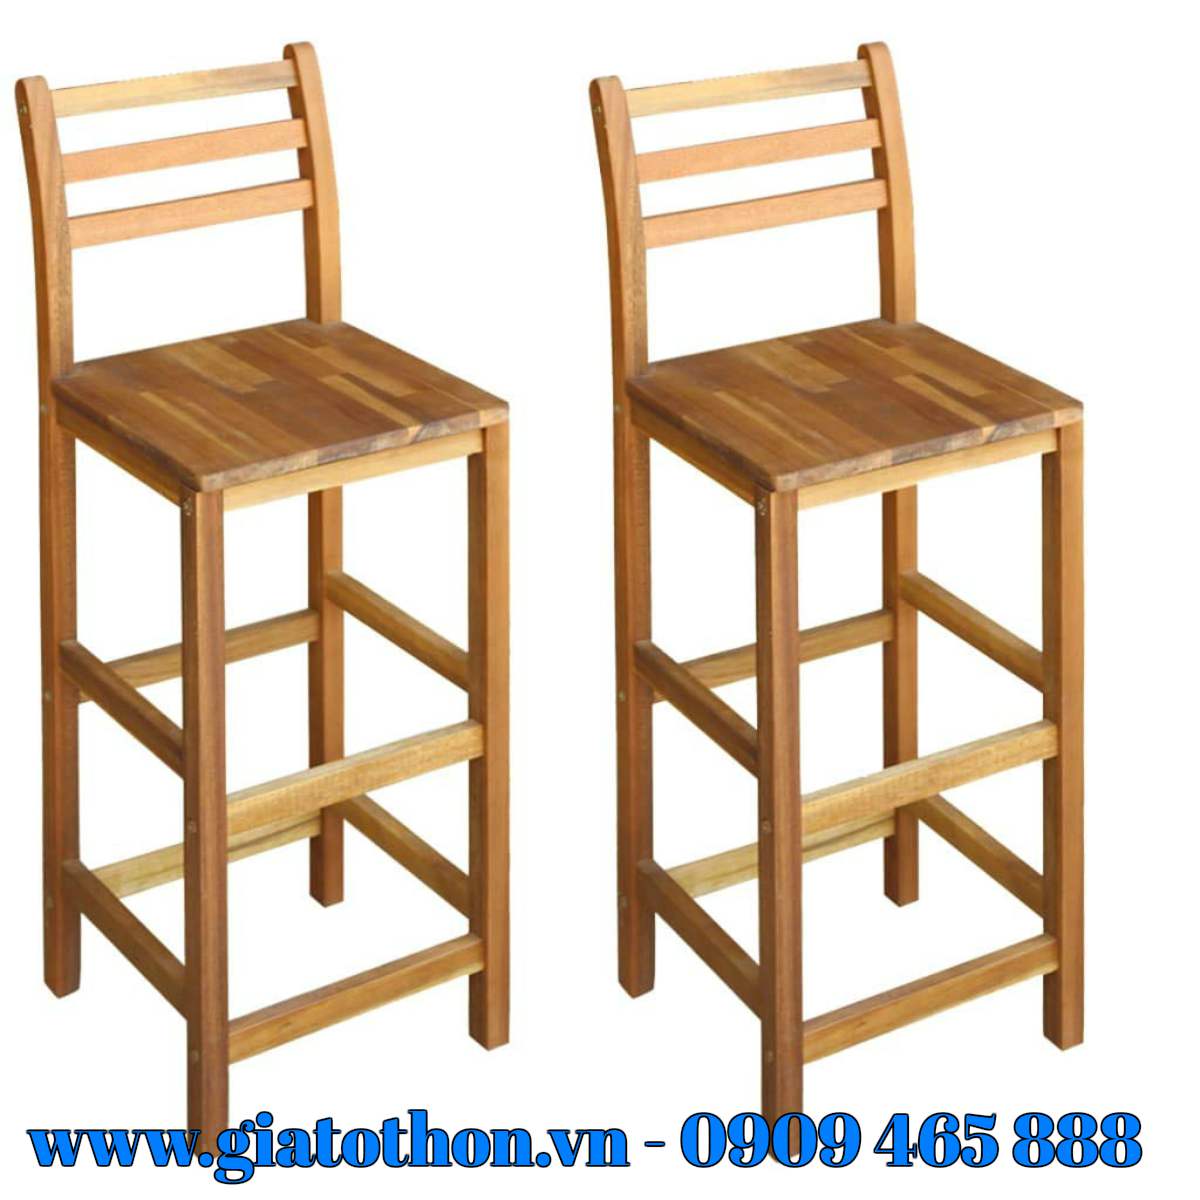 cơ sở sản xuất ghế bar chân cao mặt gỗ tại tphcm, cơ sở sản xuất ghế bar mặt gỗ uy tín, ghế bar chân gỗ, ghế bar chân gỗ cá tính